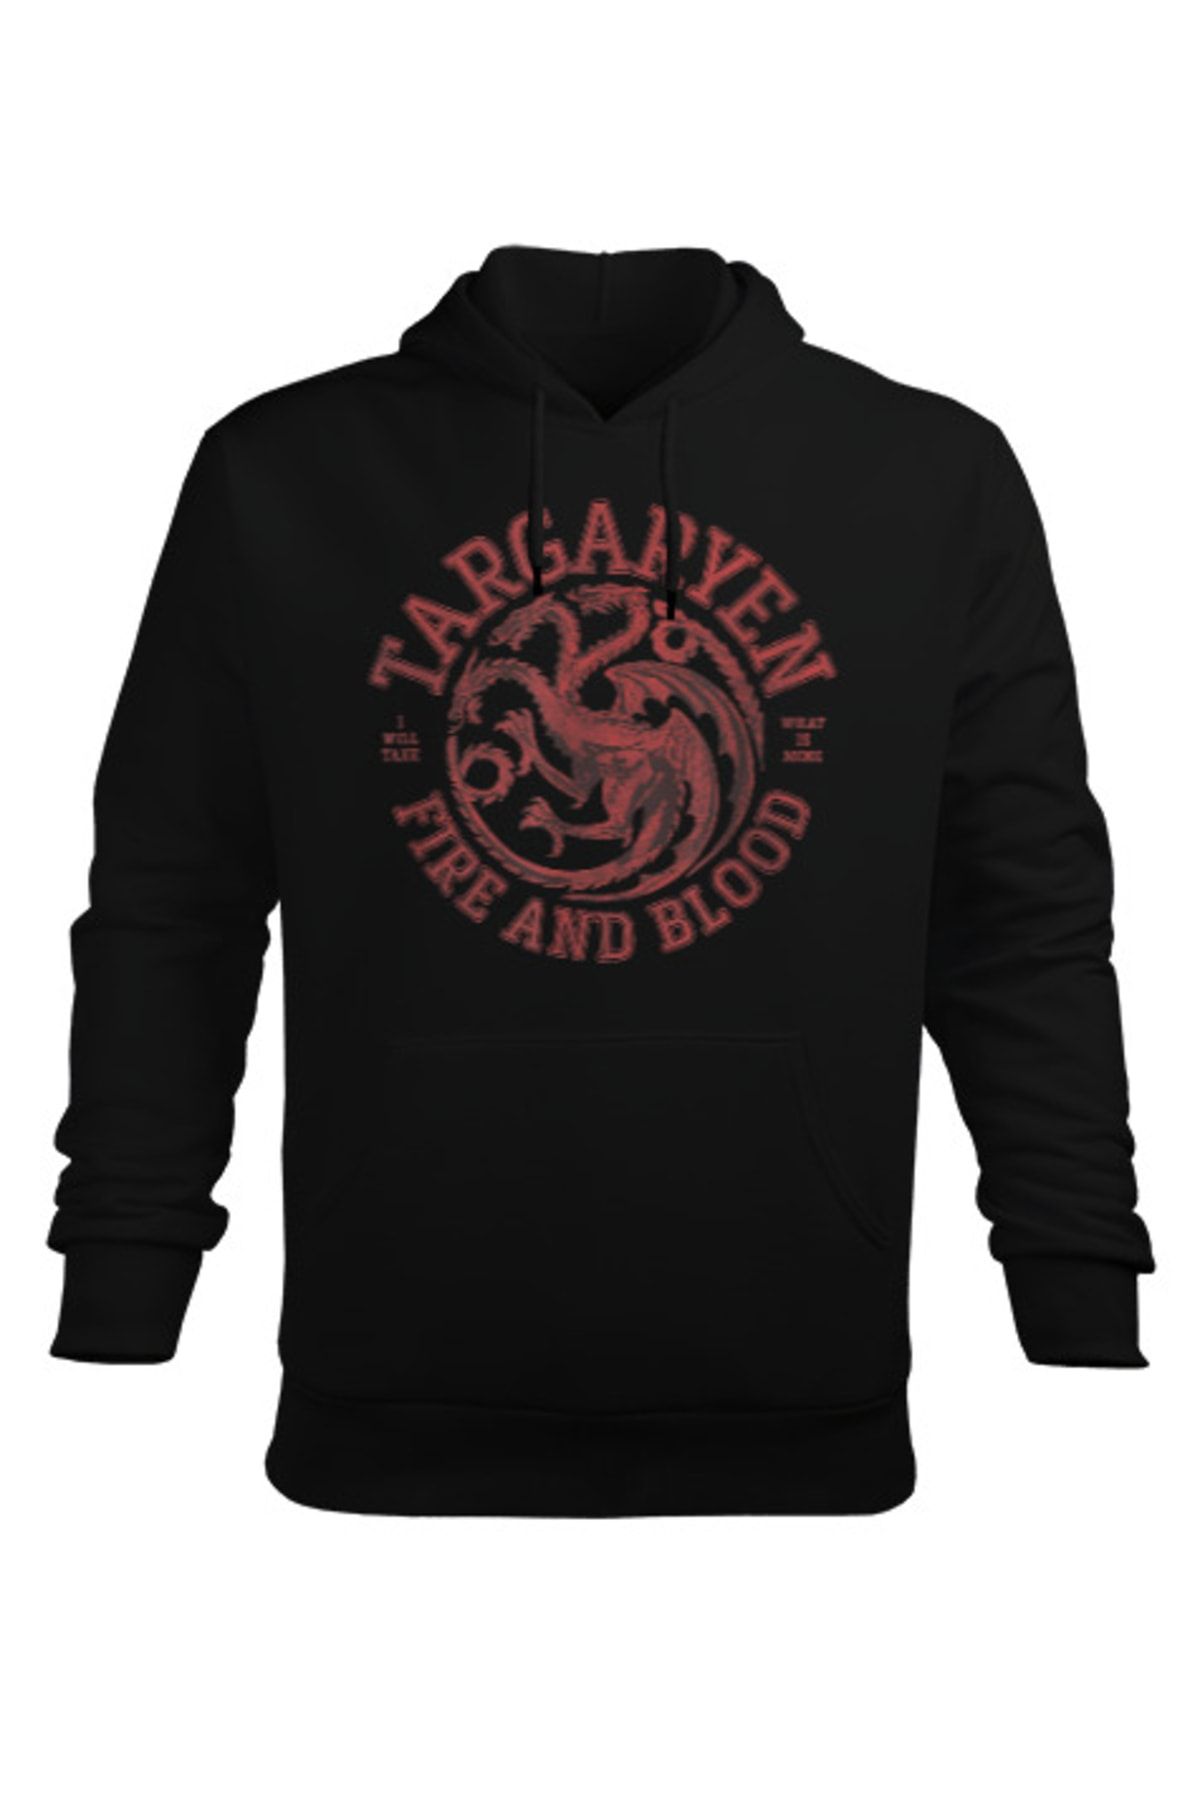 Tisho Targaryen Fire And Blood Dragon Baskılı Siyah Erkek Kapüşonlu Hoodie Sweatshirt